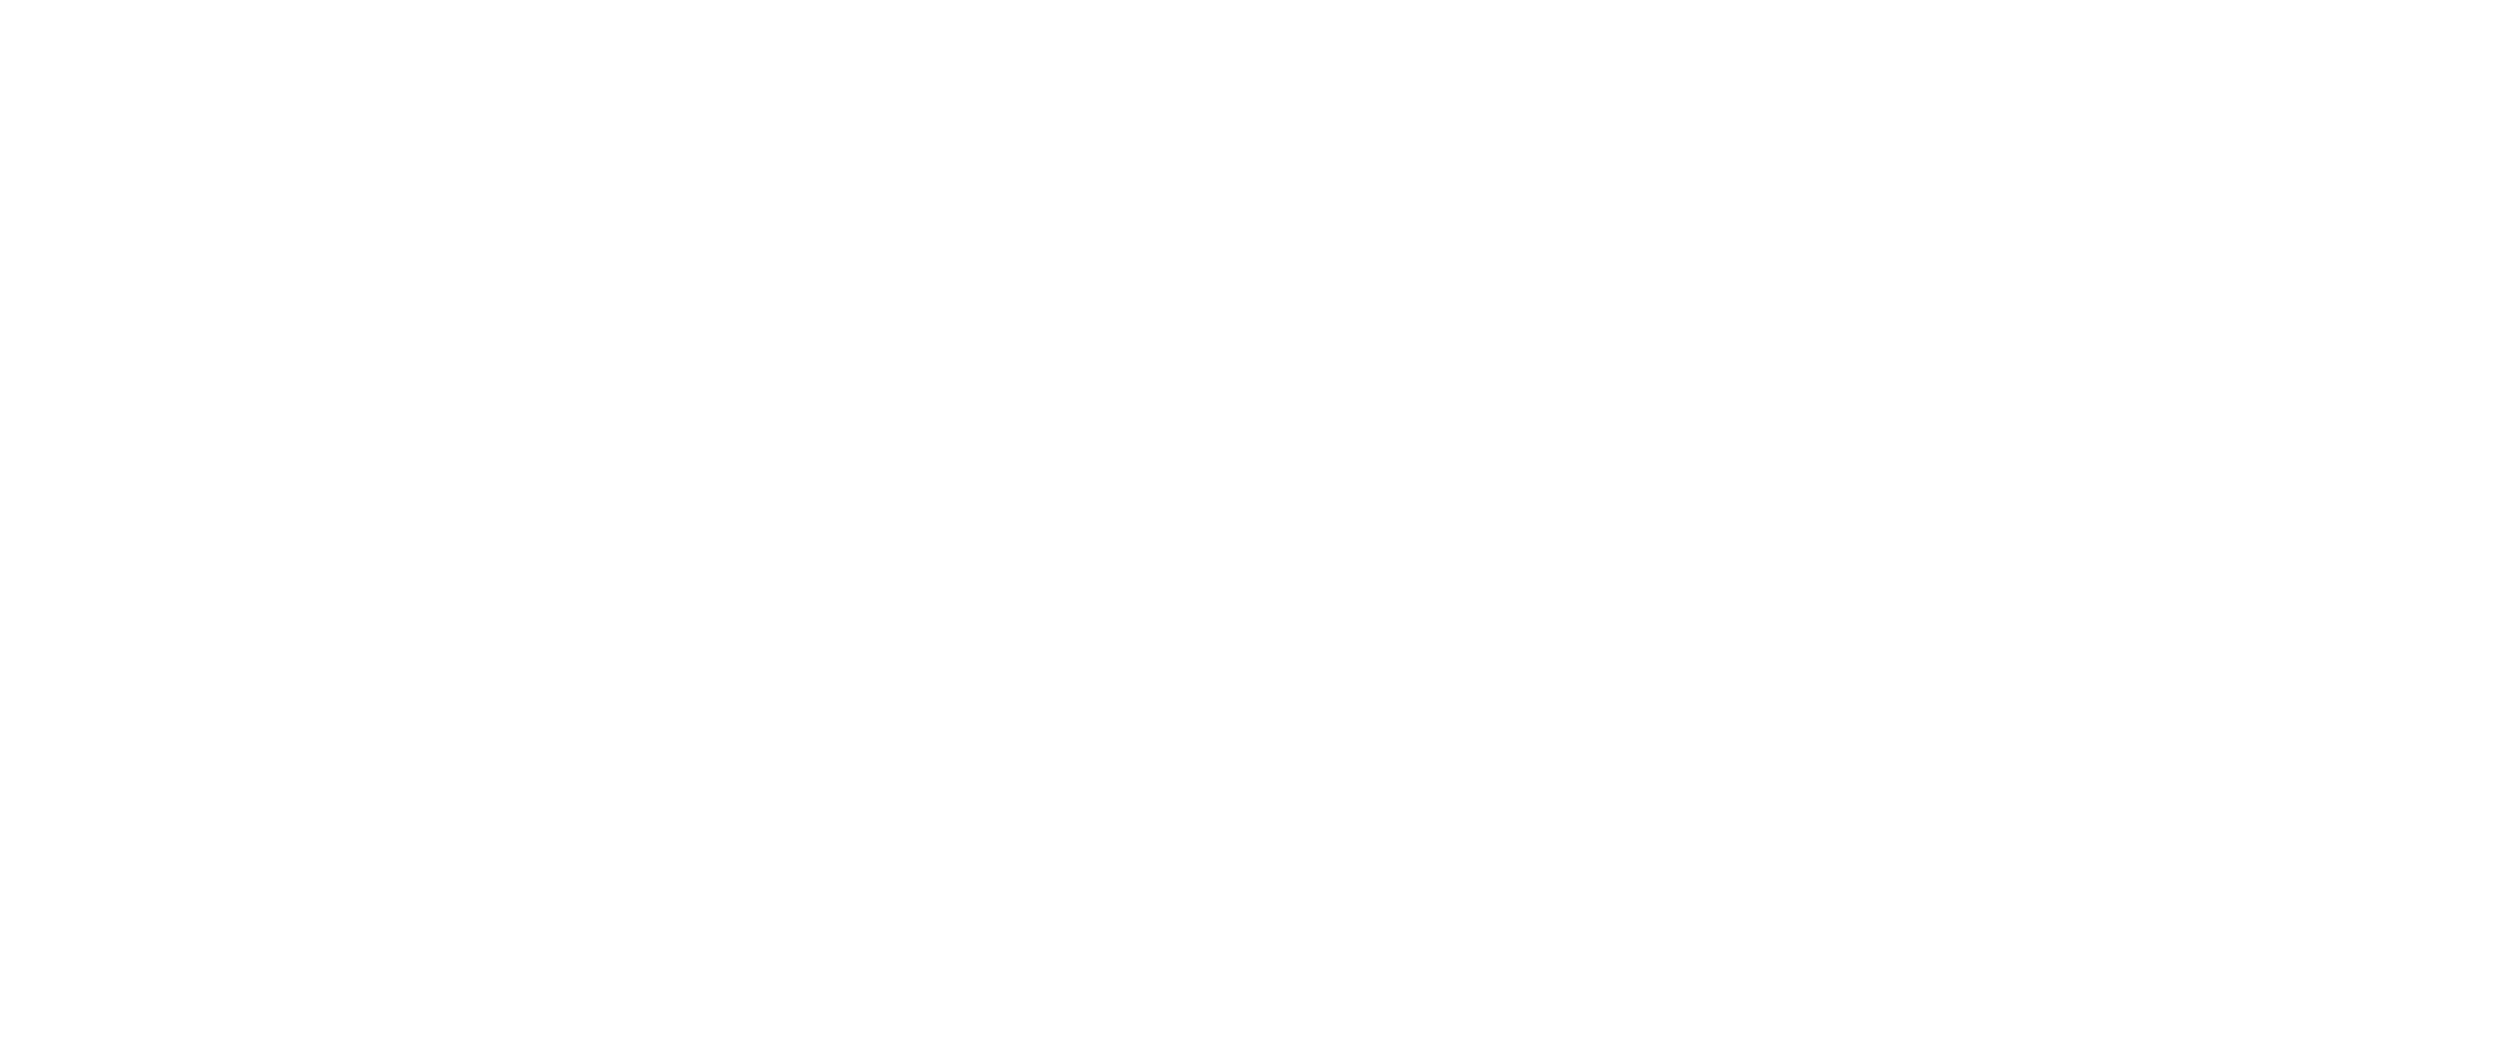 526 Main Dueling Piano Bar